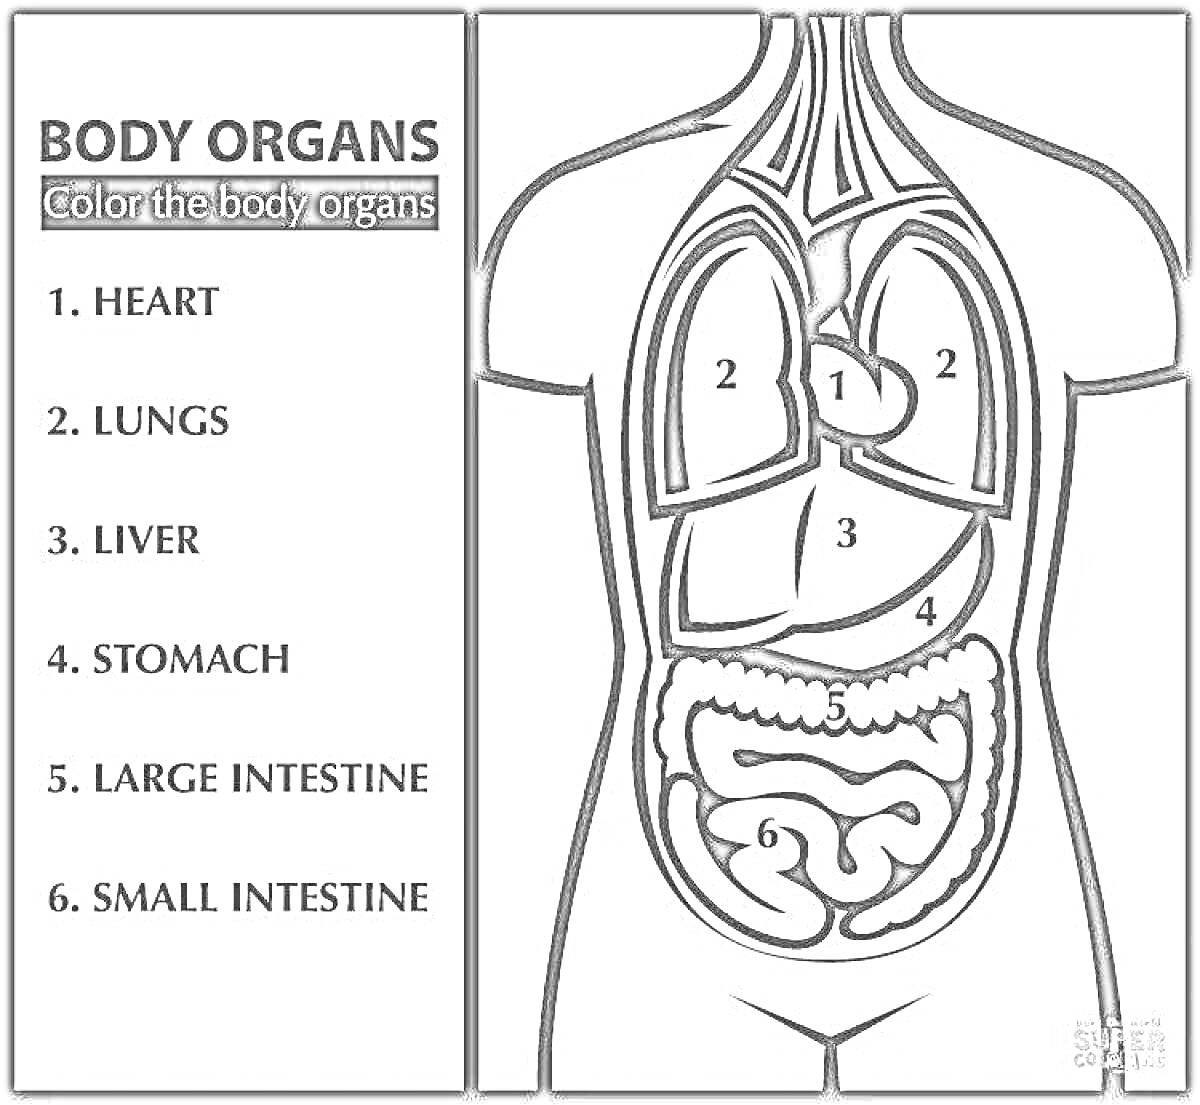 Внутренние органы человека для раскрашивания (сердце, лёгкие, печень, желудок, толстая кишка, тонкая кишка)